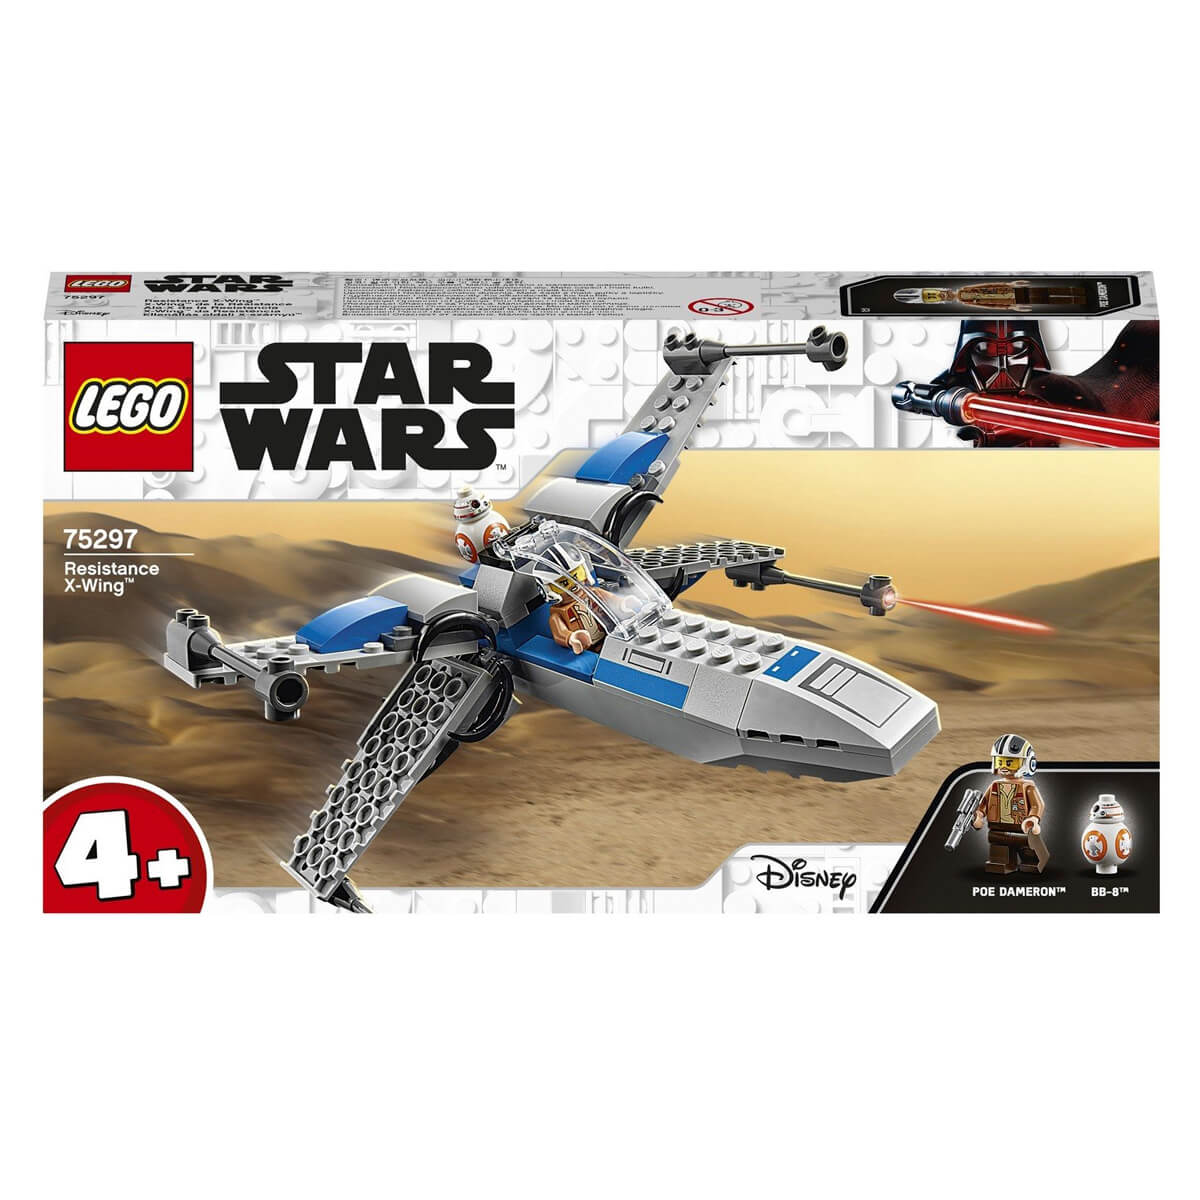 Конструктор LEGO Star Wars 75297 Истребитель сопротивления типа X лучшие звездолеты галактики с мини фигуркой по дэмерона